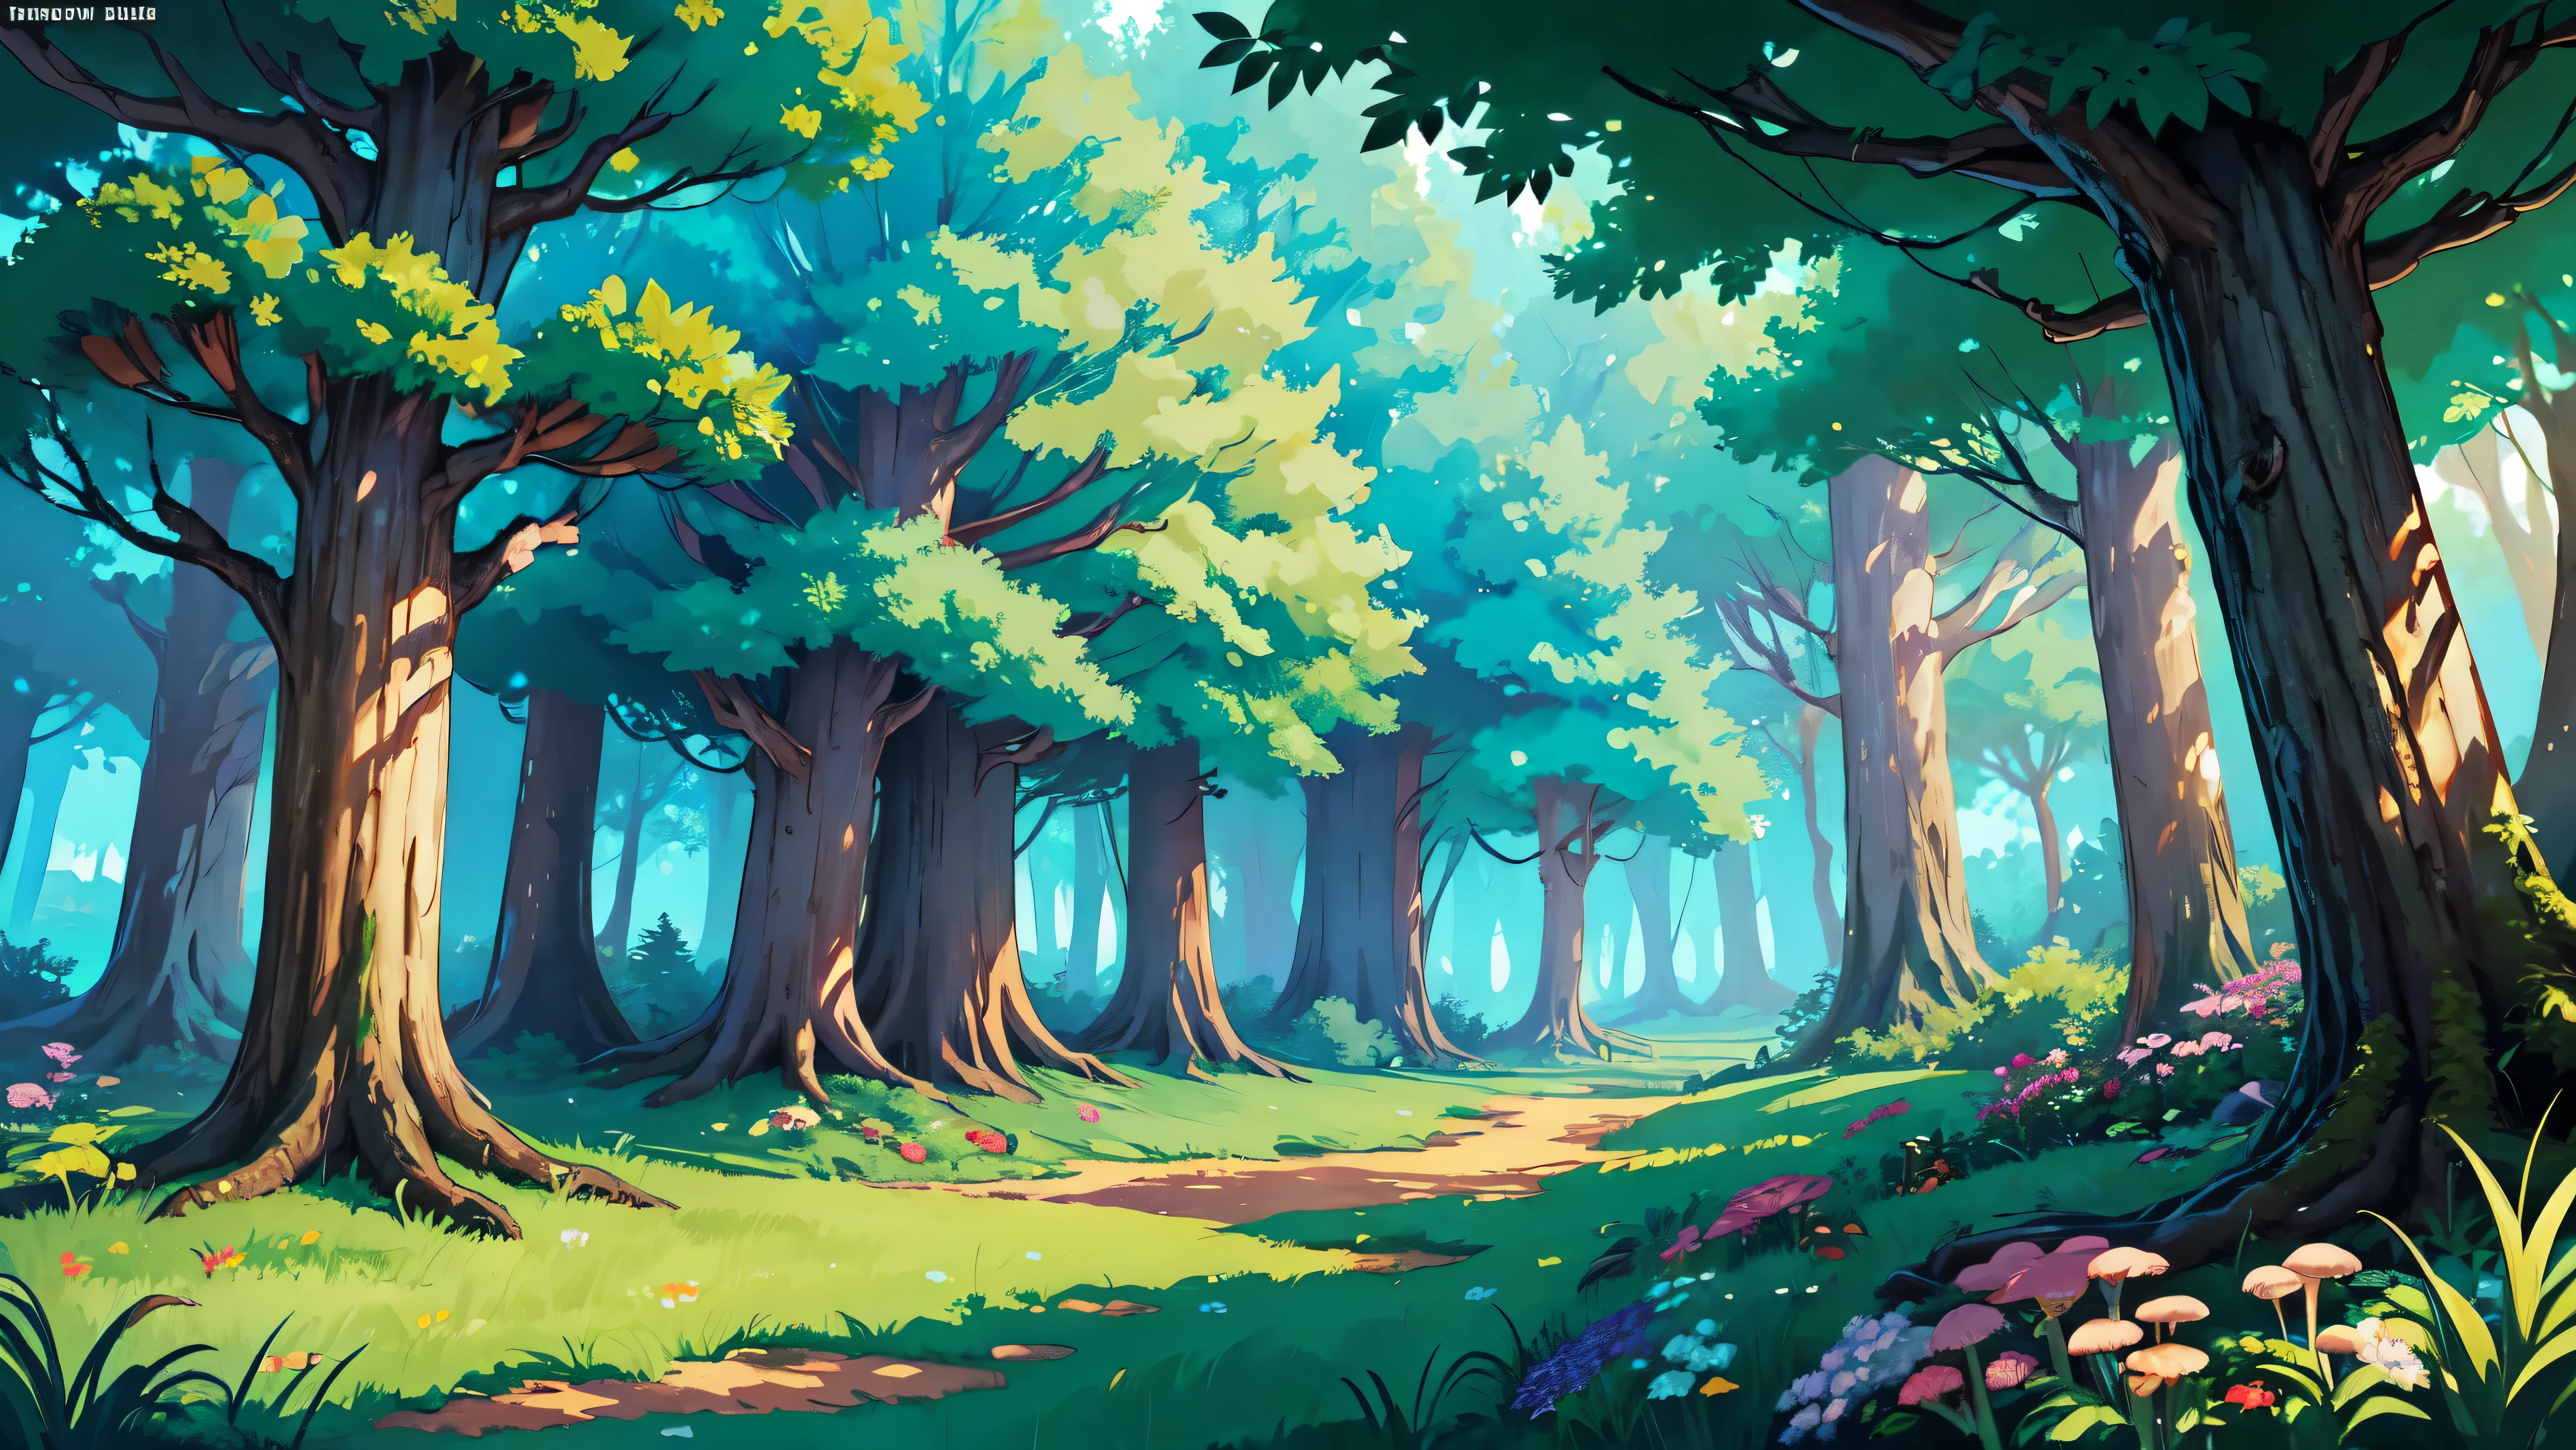 ((明亮的)), Cartoon beautiful fantasy fairy 裡面的森林 with trails and trees on a sunny day, 森林植物, 美麗的仙女蘑菇, 野生美麗的花朵, 詳細的, 詳細的 background artwork masterpiece, Mobile 遊戲背景, 遊戲背景, 2D遊戲美術背景, 森林背景, scenery art 詳細的, 景观艺术品, 手机游戏艺术, 2d 遊戲背景, 動漫背景藝術, 森林空地景觀, 动漫乡村风景, 裡面的森林, elf 森林背景, 森林環境, 詳細的遊戲藝術, 4k